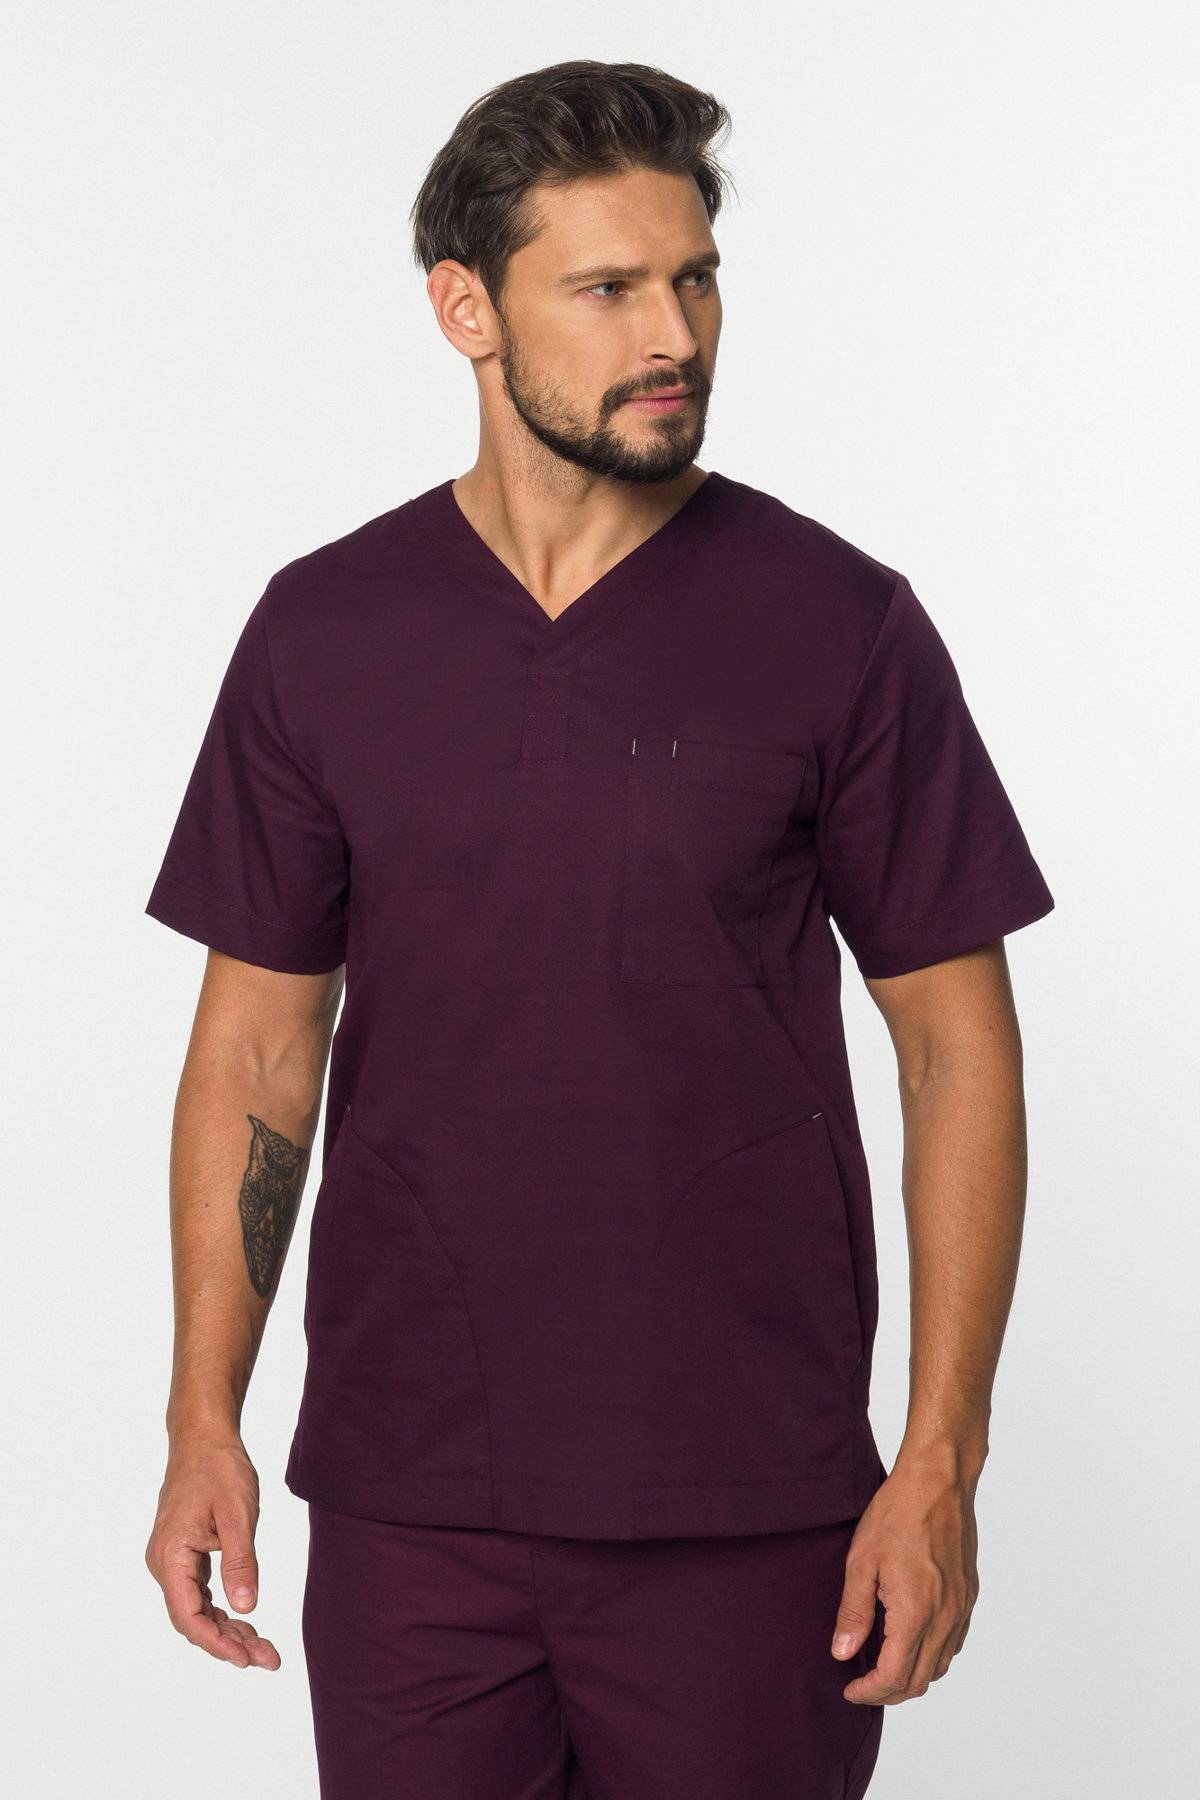 Bluza medyczna męska (kolor burgundowy, MB2-Bu)